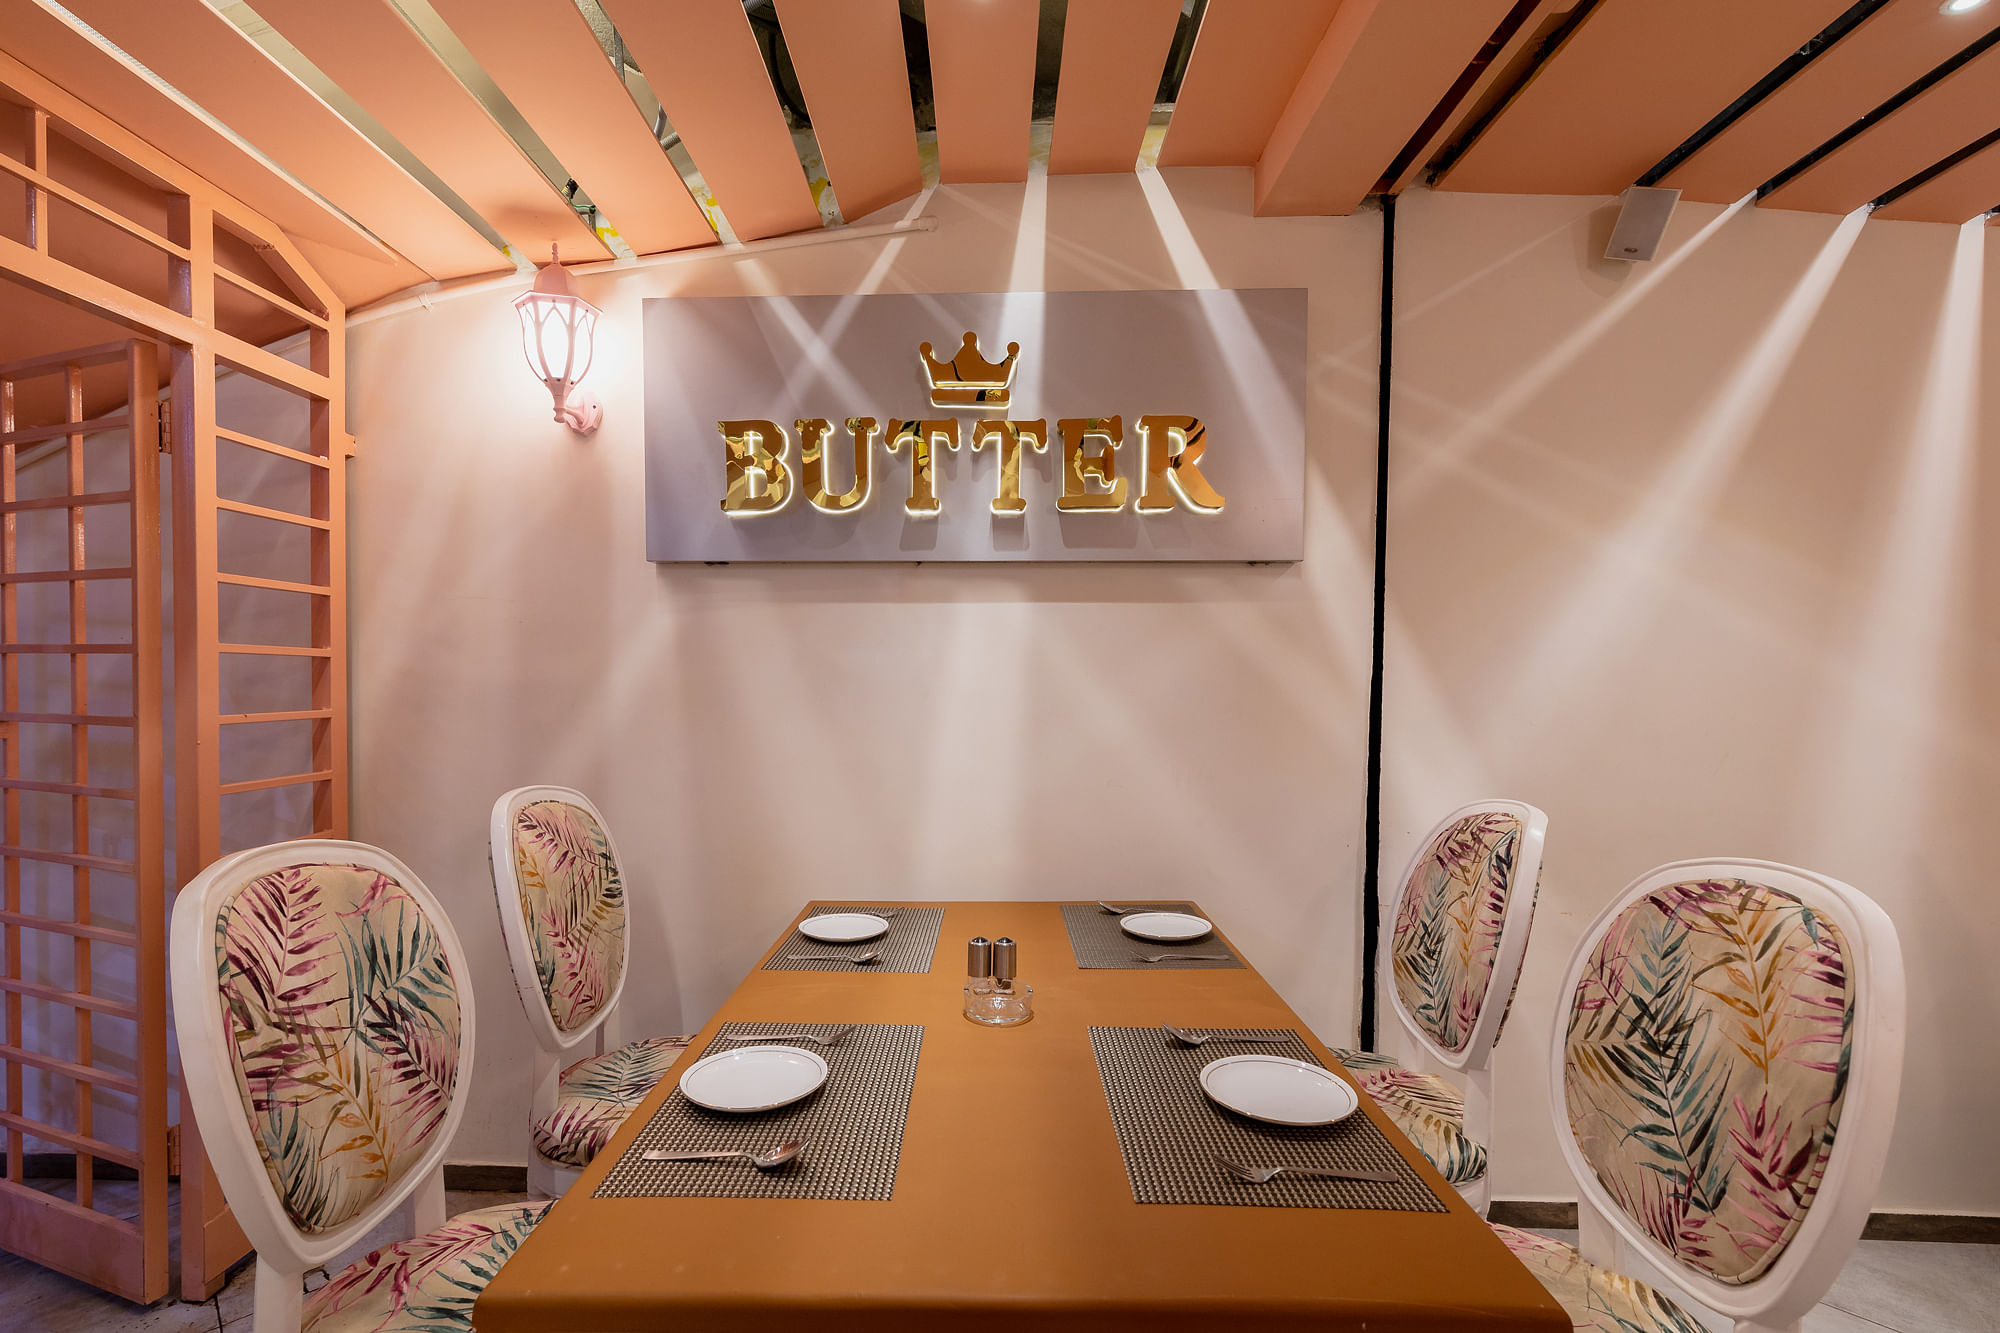 Butter Artisan Cafe in Ashok Nagar, Bangalore